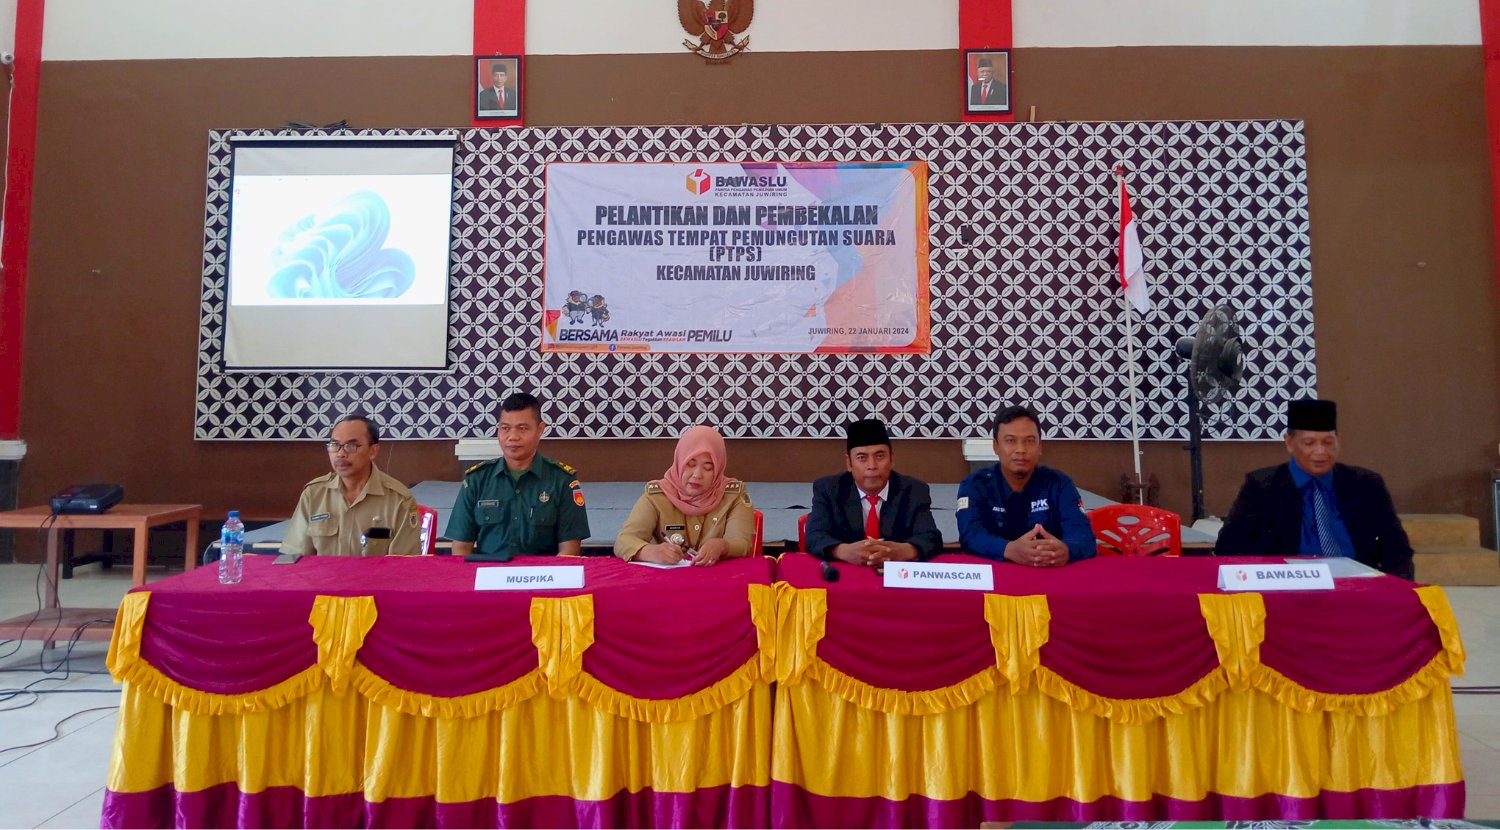 Pelantikan dan Pembekalan Pengawas Tempat Pemungutan Suara (TPPS) Kecamatan Juwiring